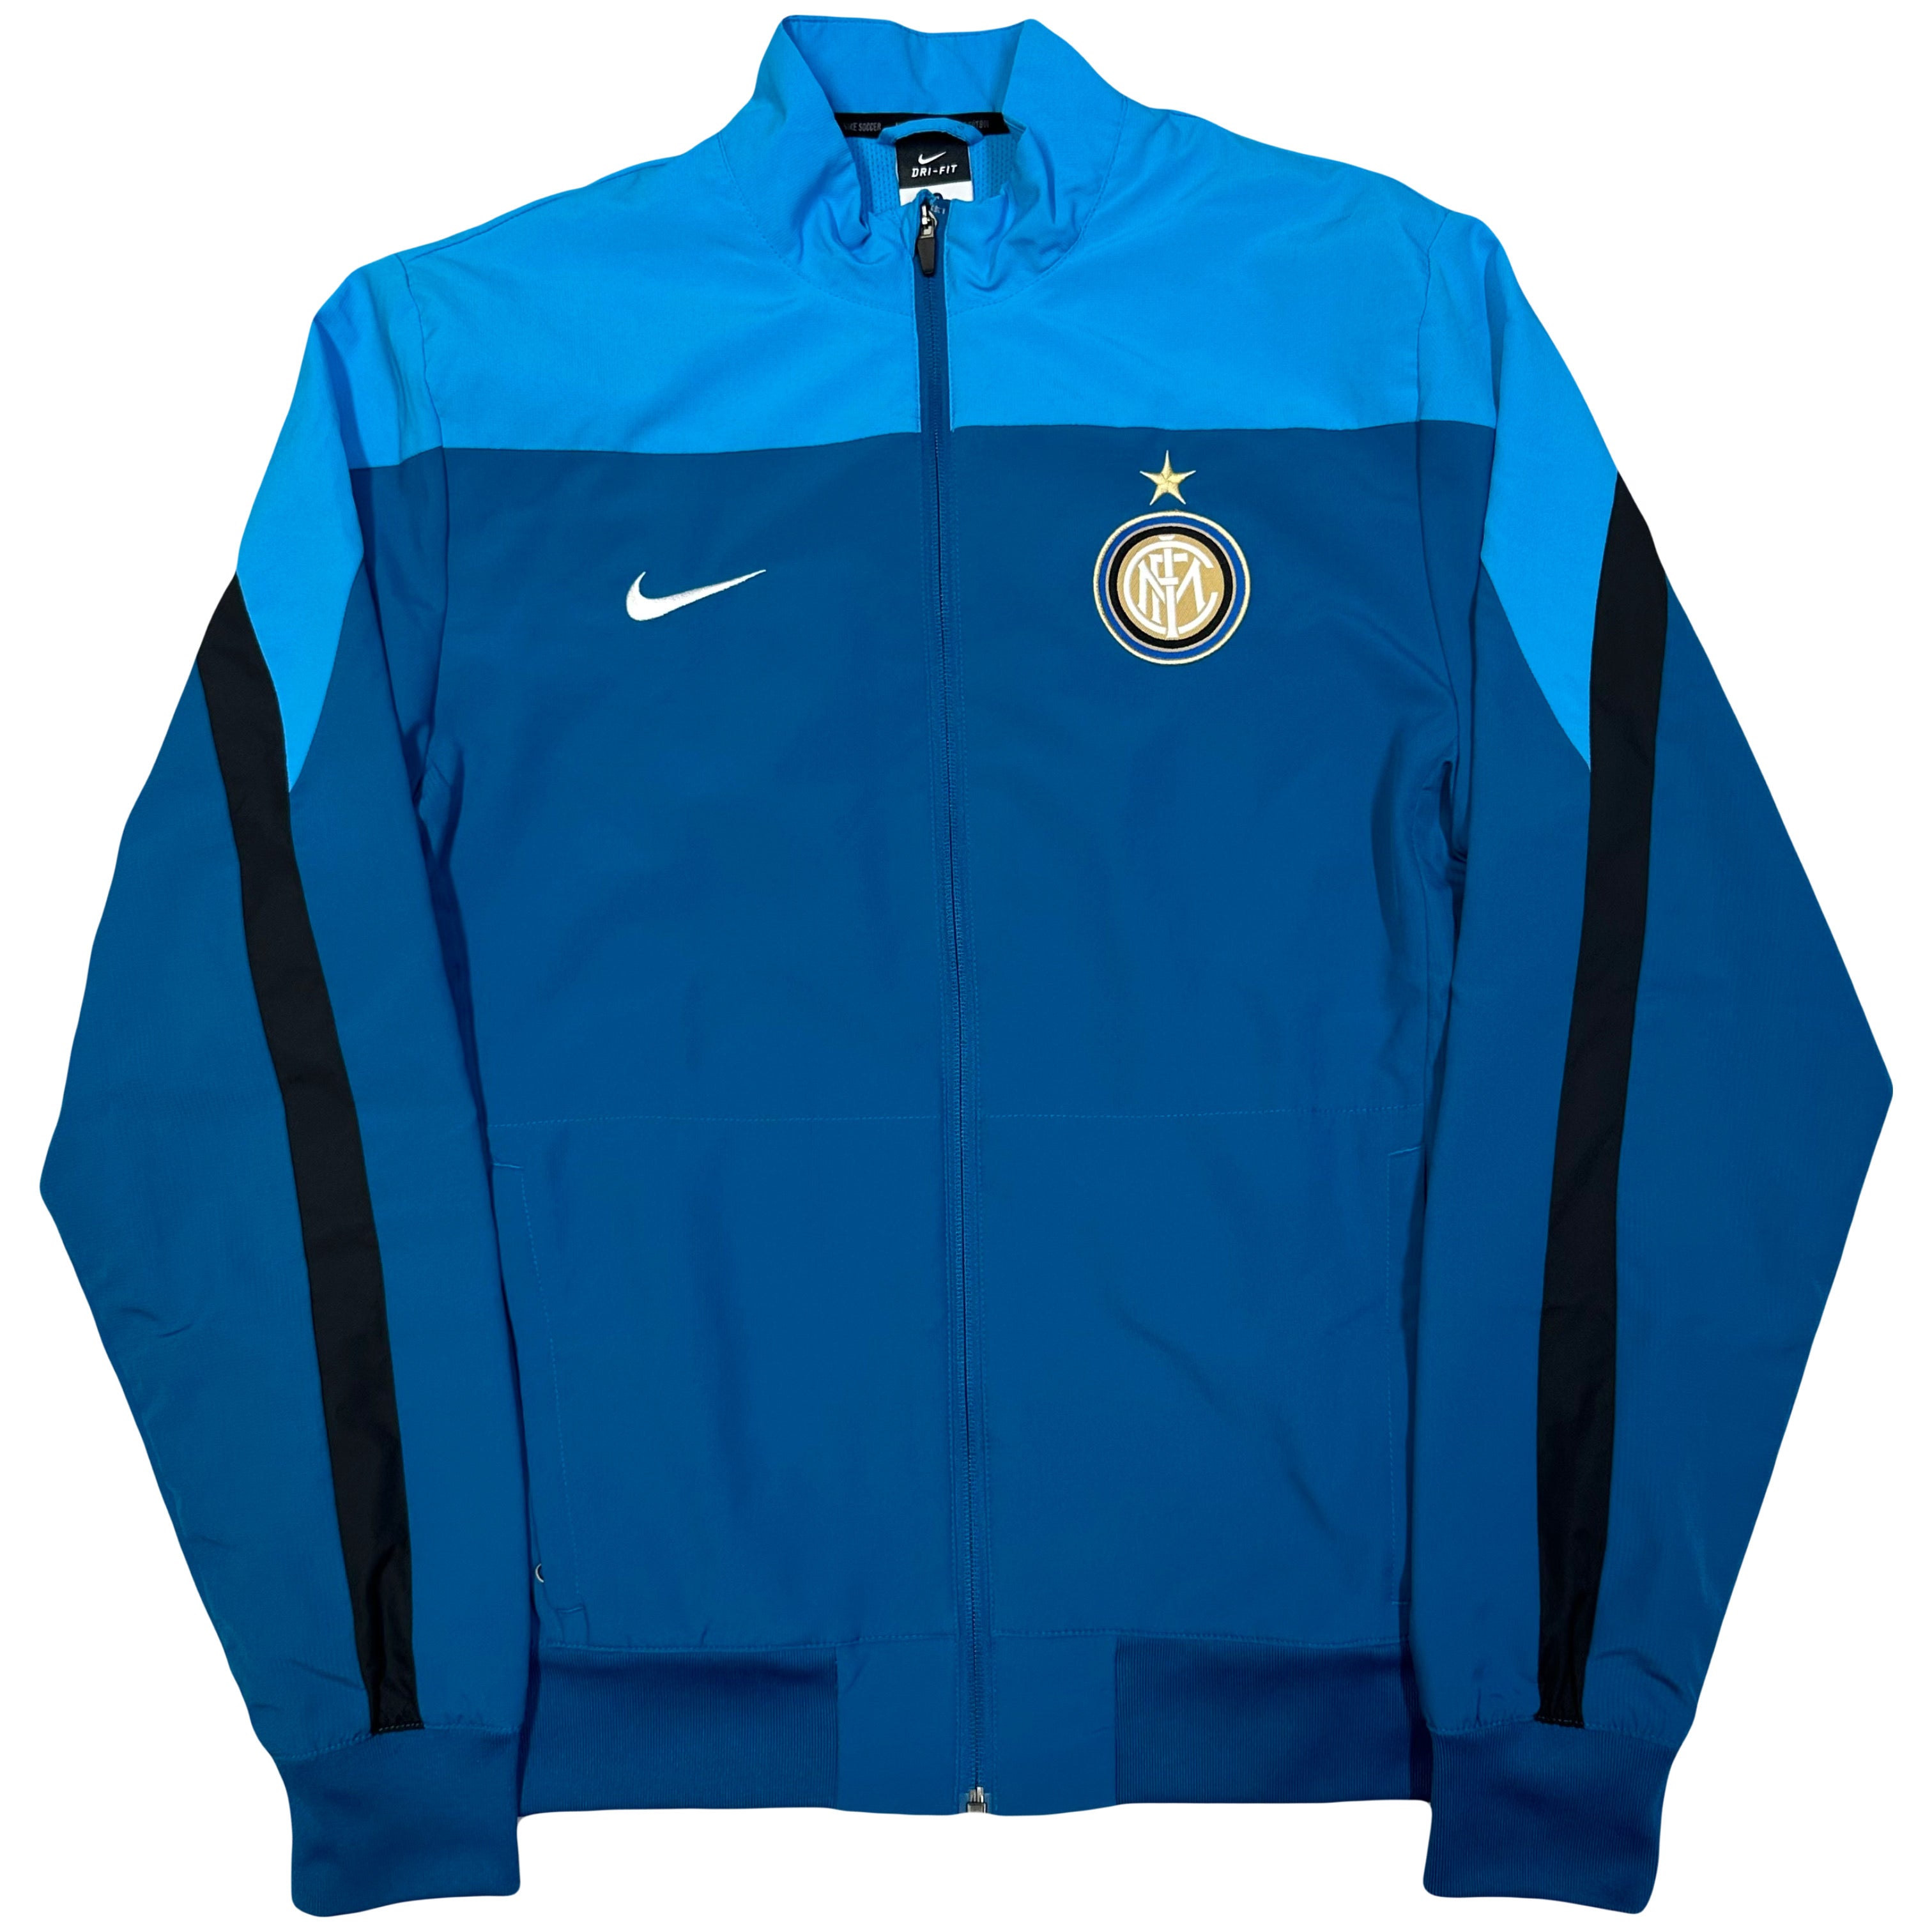 Nike Inter Milan 2013/14 Tracksuit In Blue & Black ( XL )